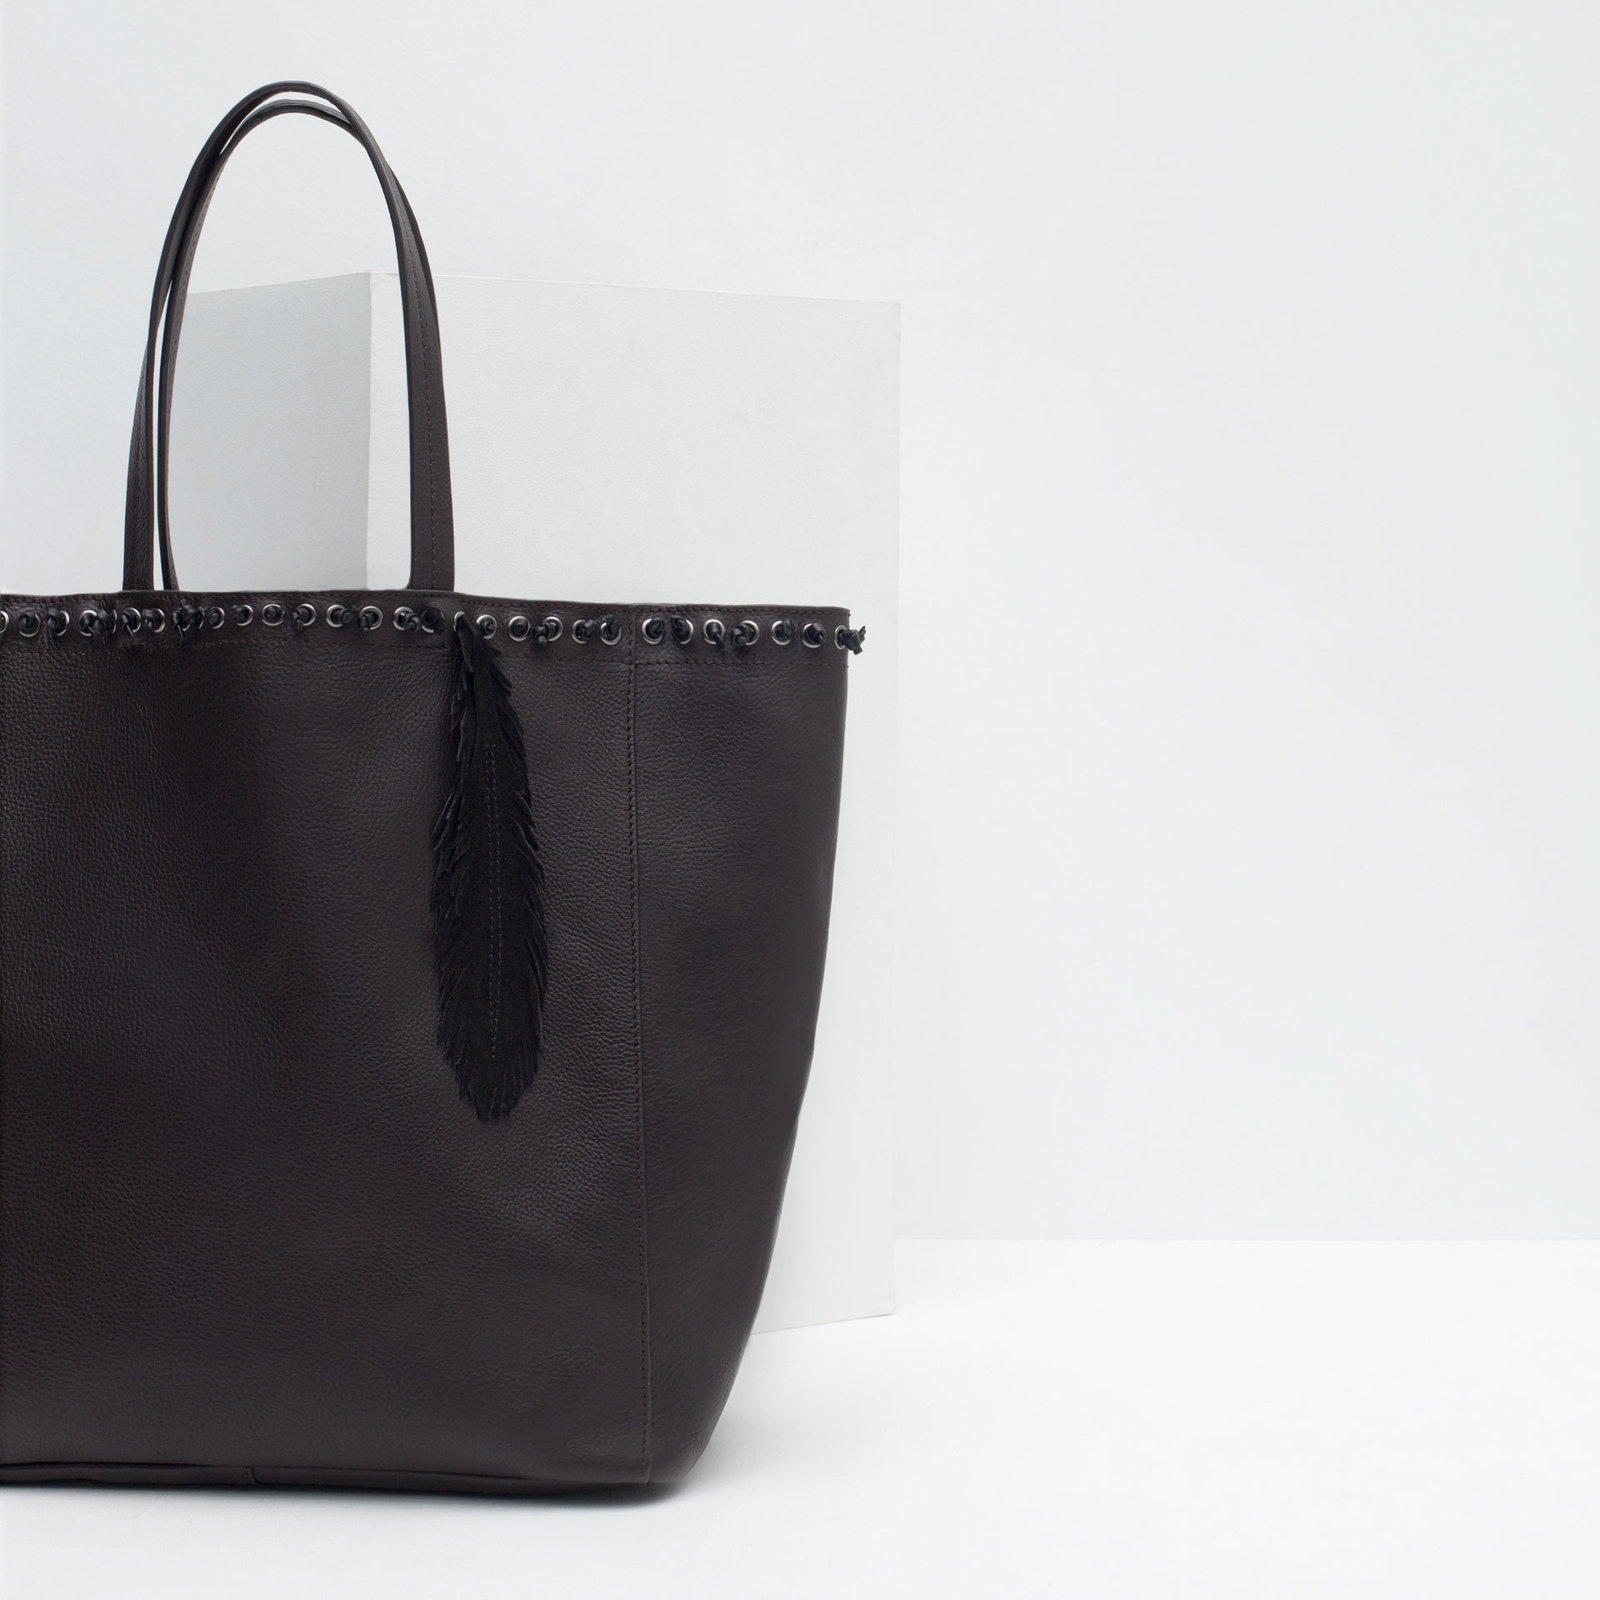 Zara csábos női fekete bevásárló táska 2015.10.15 #88754 fotója